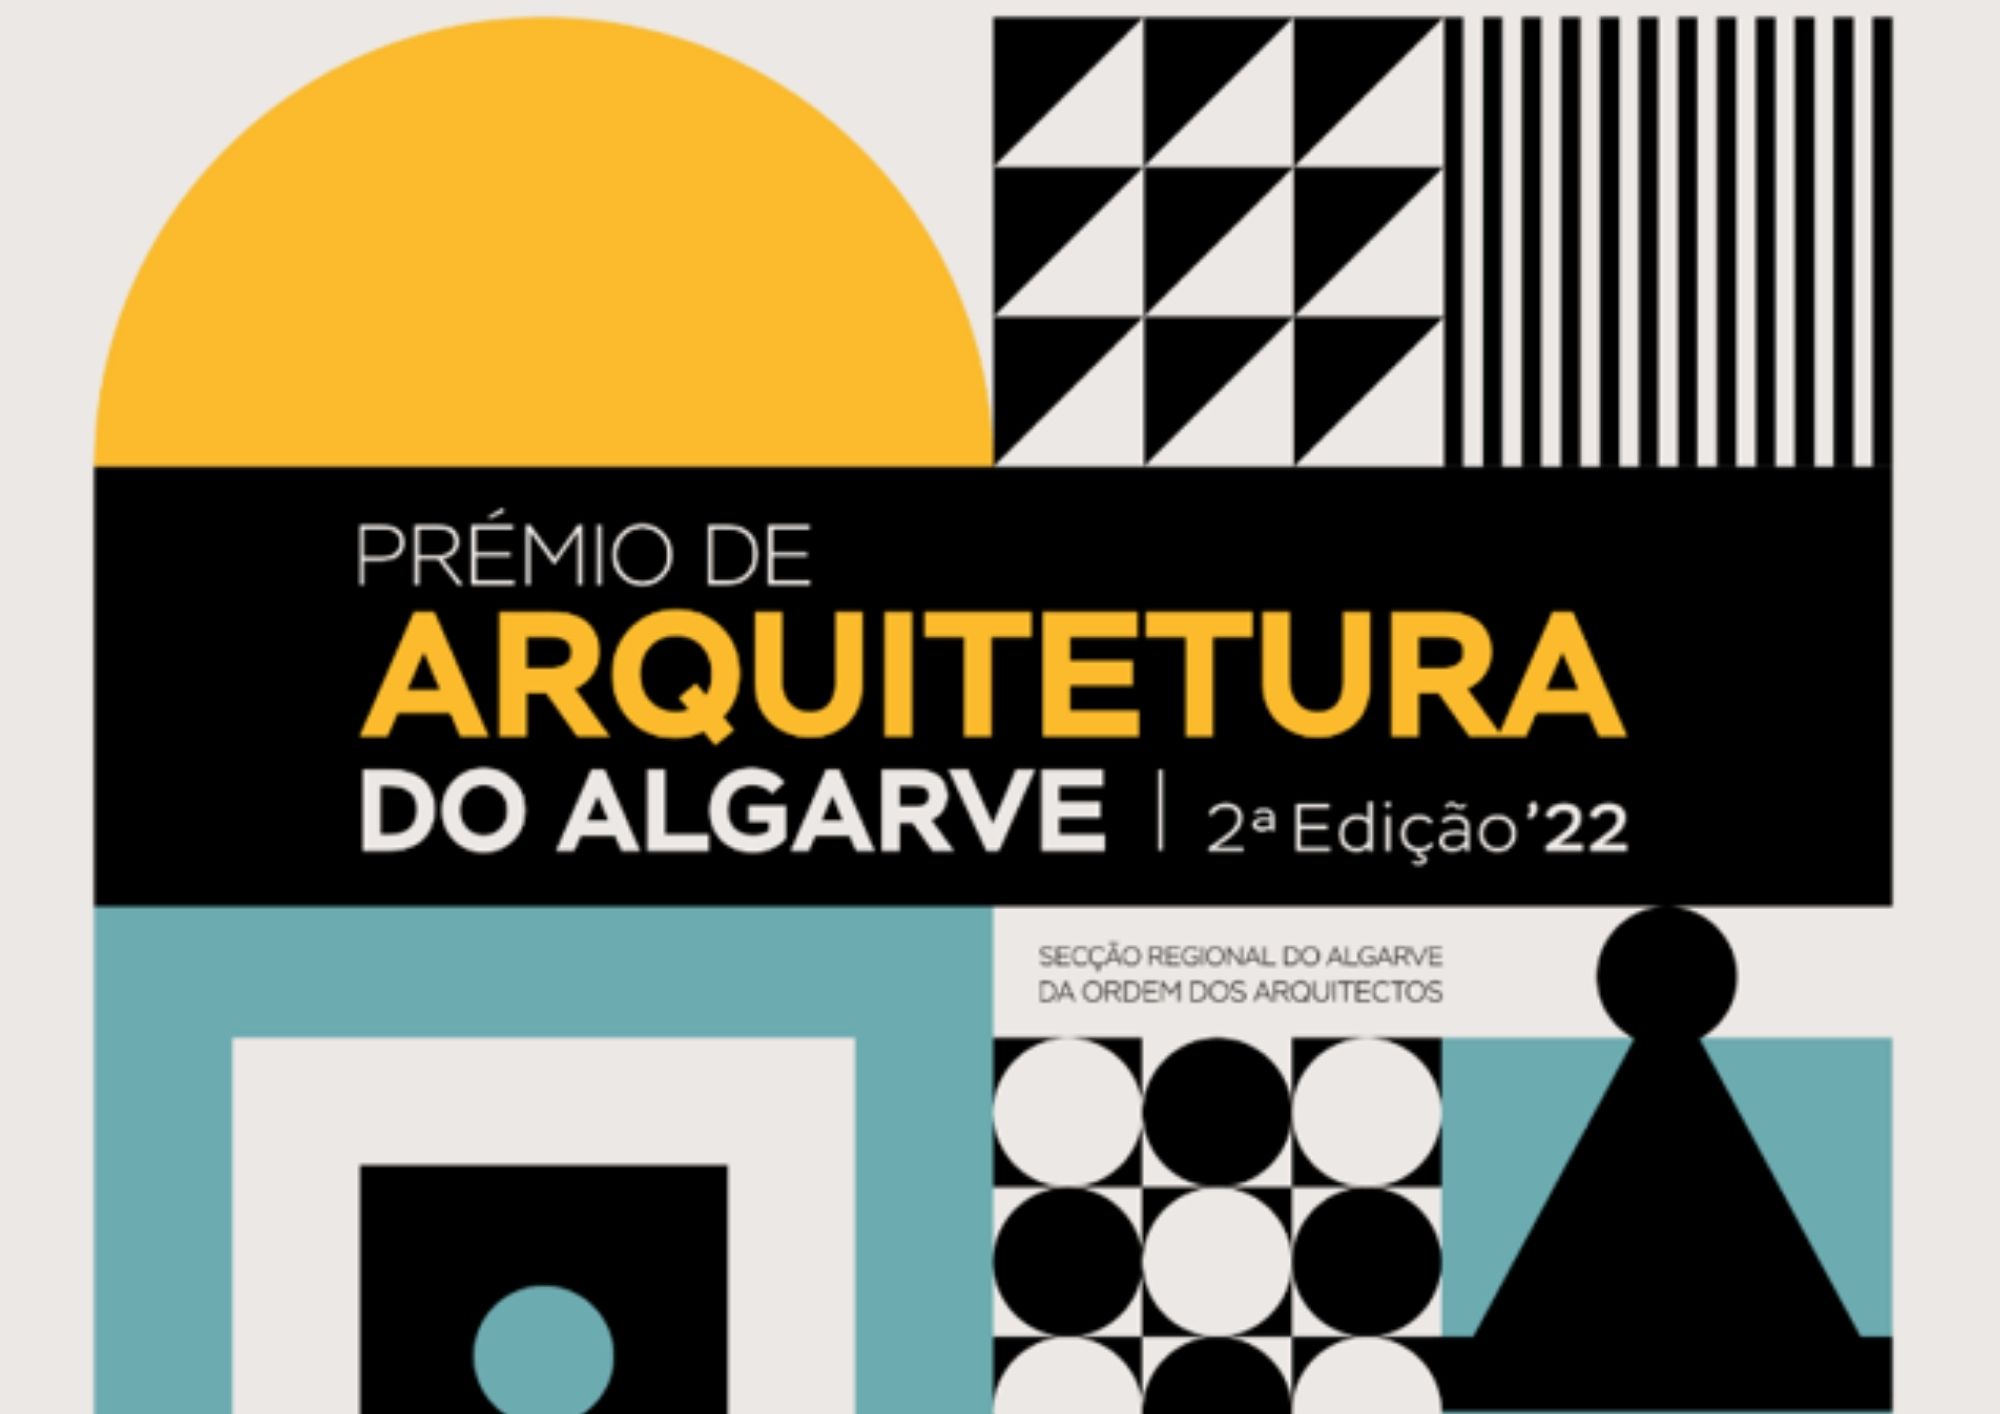 Prémio de Arquitetura do Algarve, candidaturas até 31 de agosto